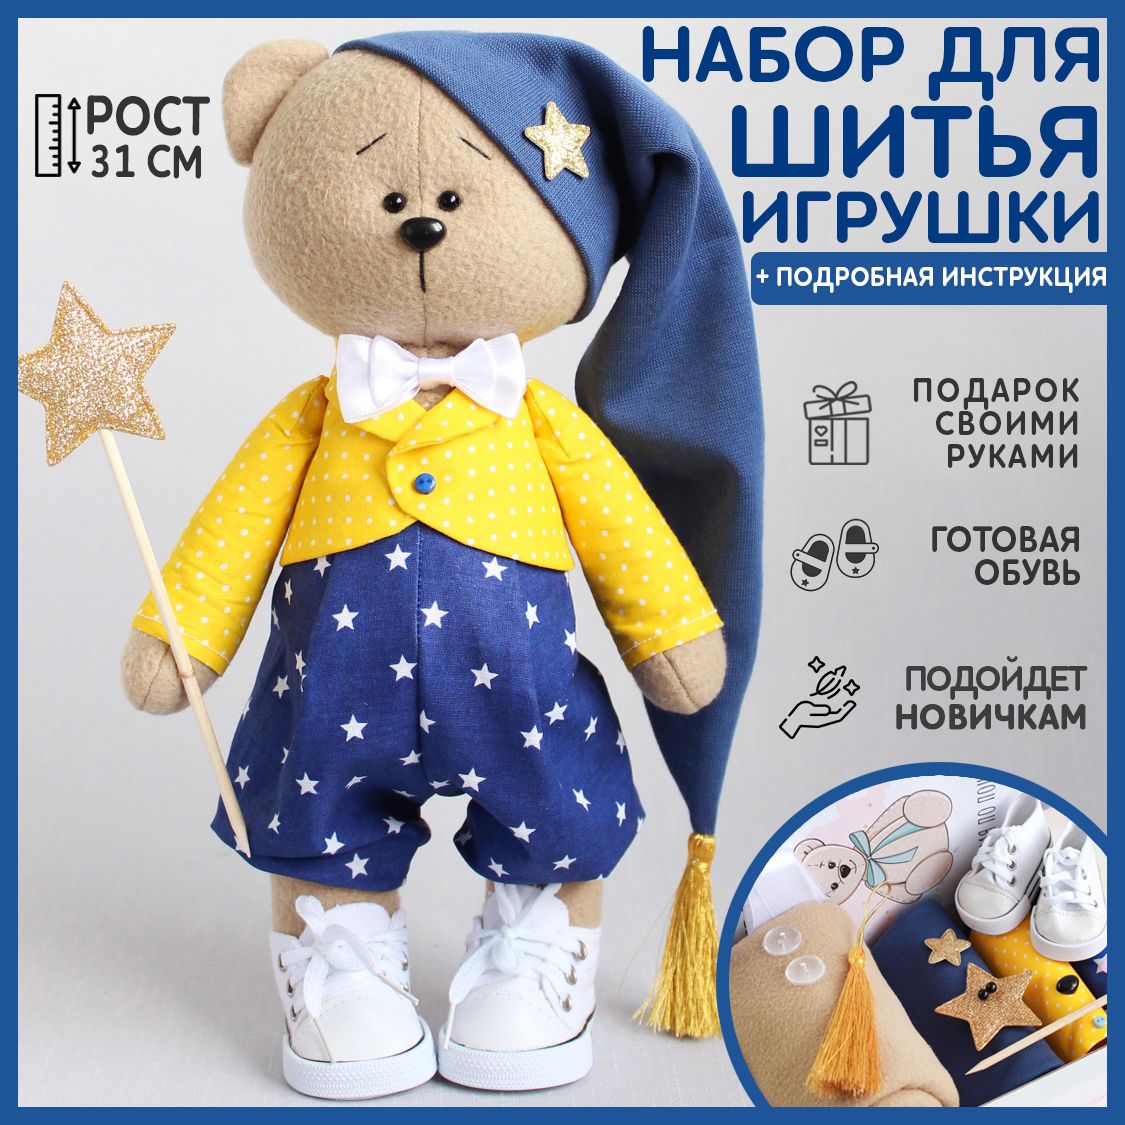 Купить наборы для шитья кукол и игрушек в интернет магазине фотодетки.рф | Страница 12